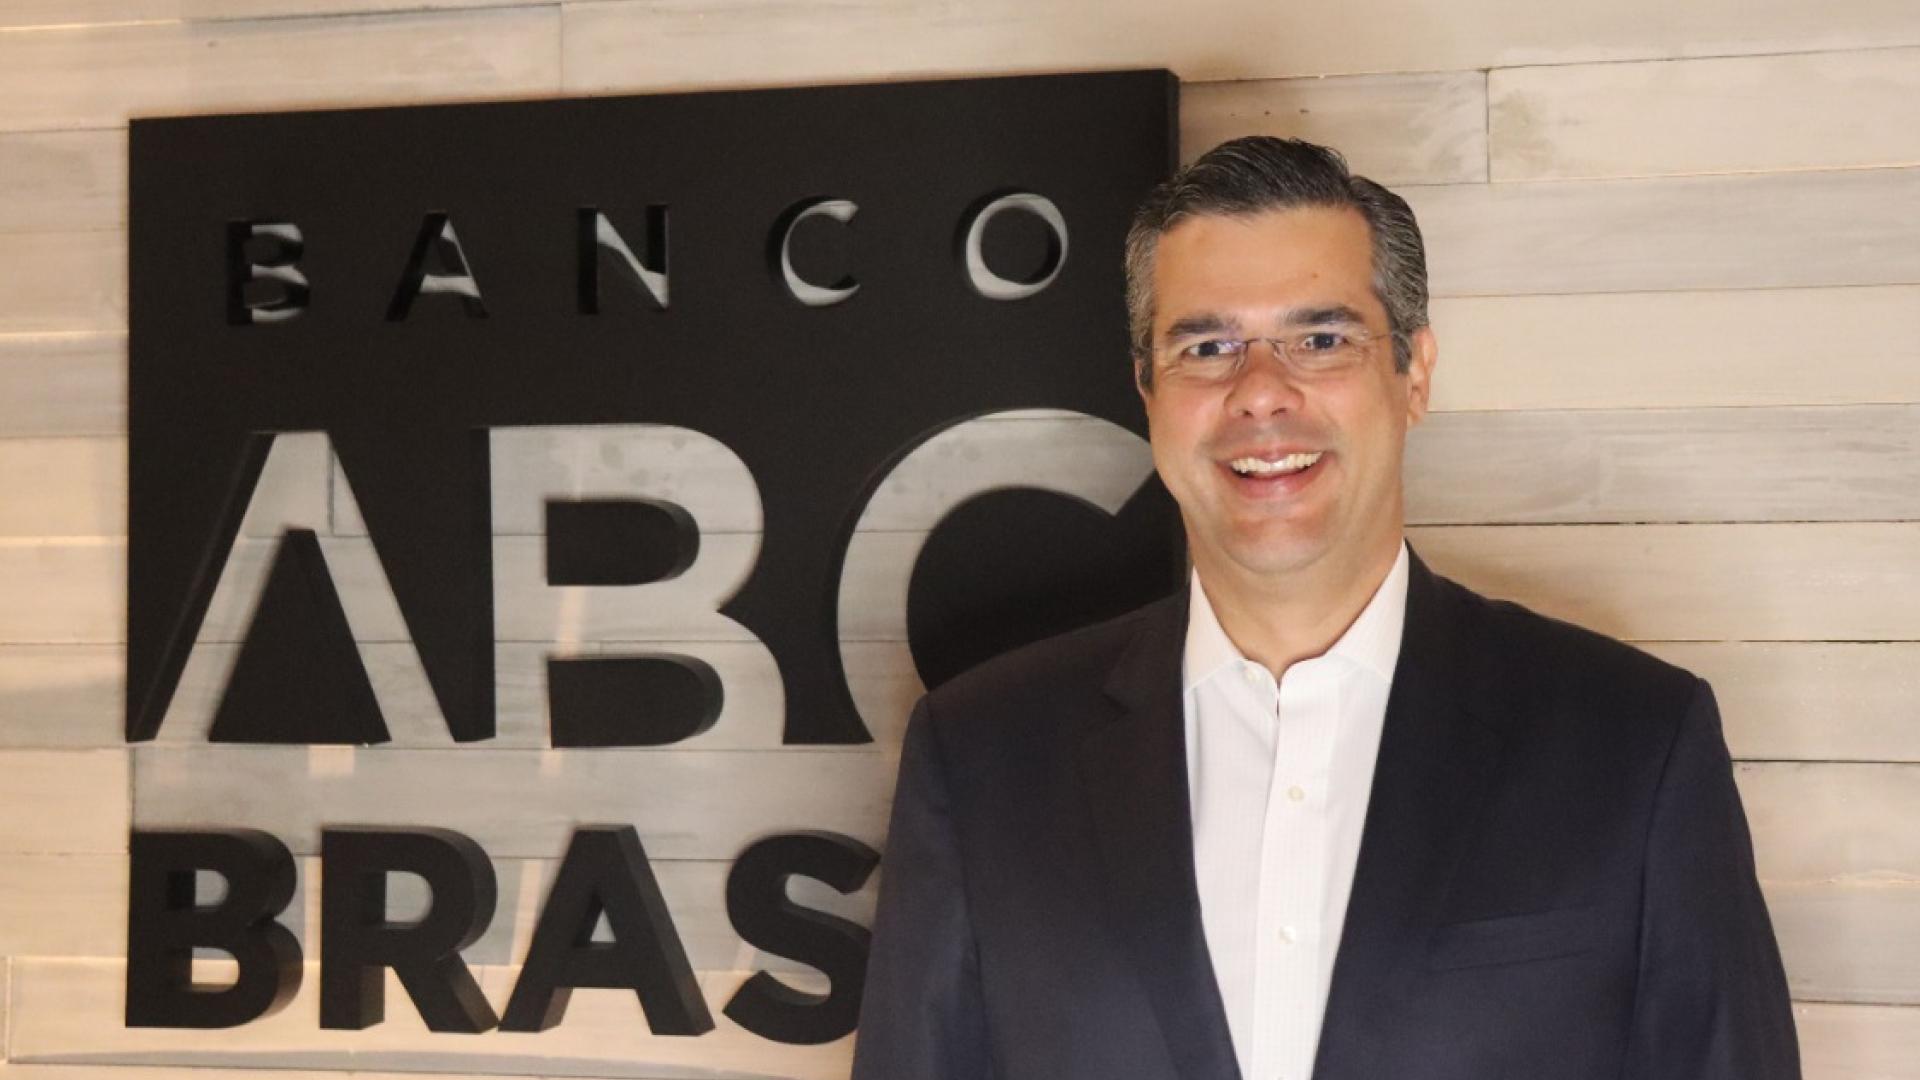 Segmento Bancário - ABC Brasil, Banco do Brasil, Bradesco